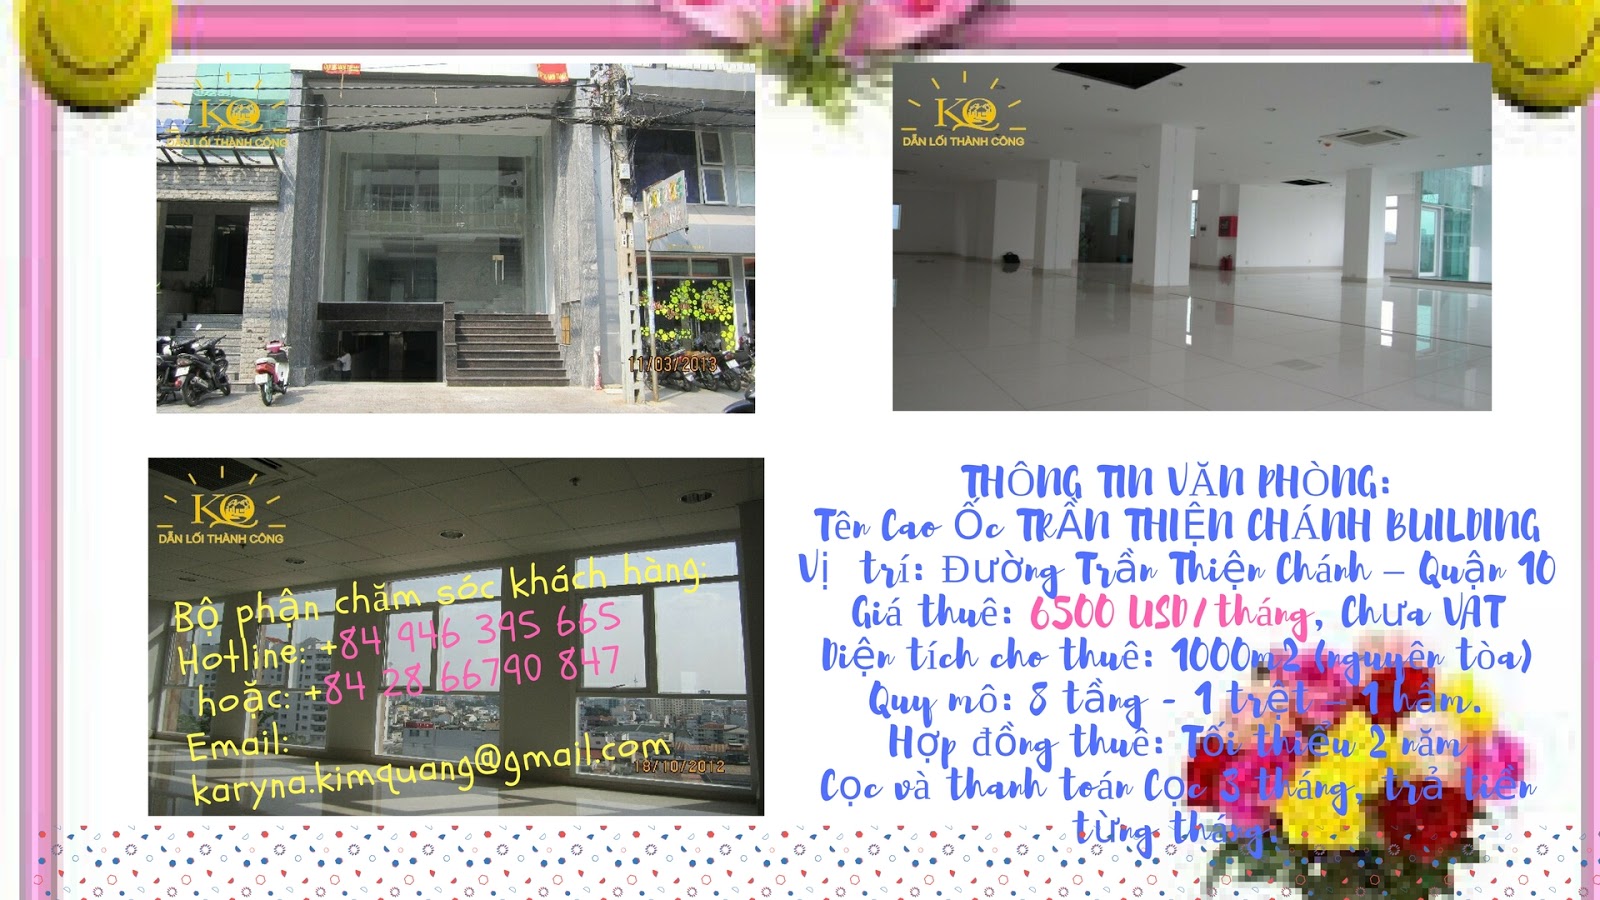 Cho thuê văn phòng quận 10 Trần Thiện Chánh building